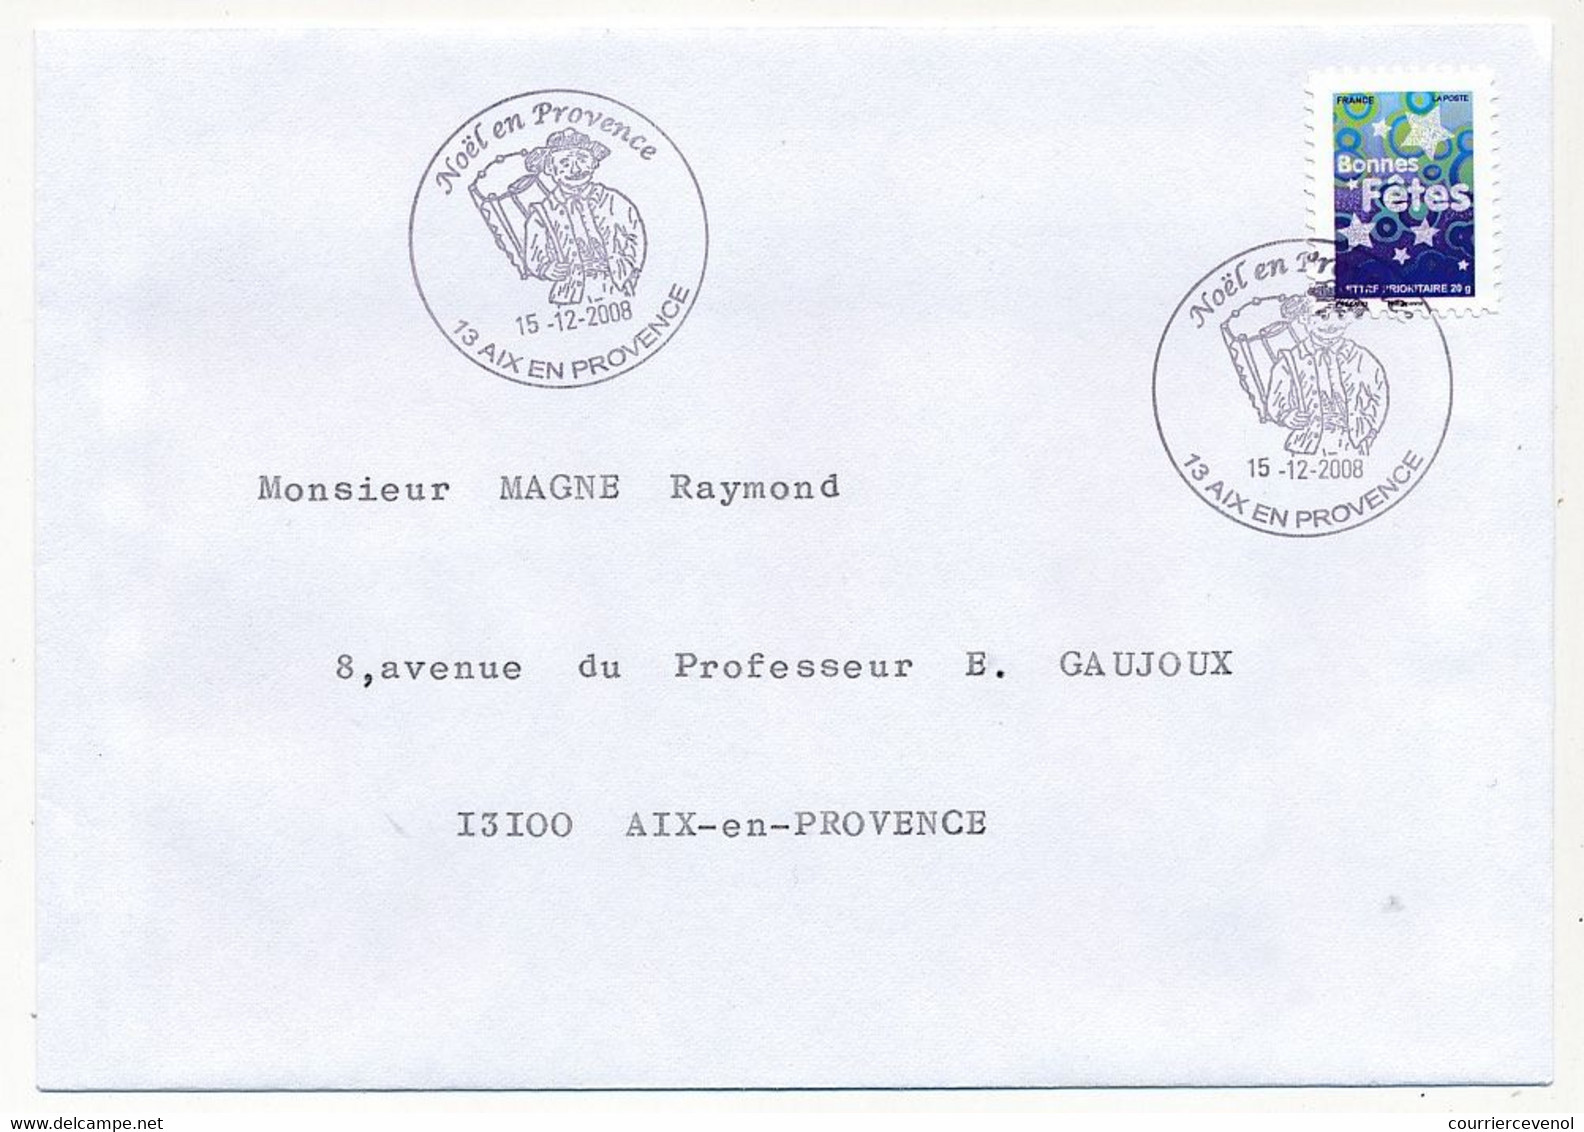 FRANCE - 6 Enveloppes Série Bonnes Fêtes 2008 - Oblit Temporaire Noël En Provence - Aix En Provence - 15/12/2008 - Lettres & Documents